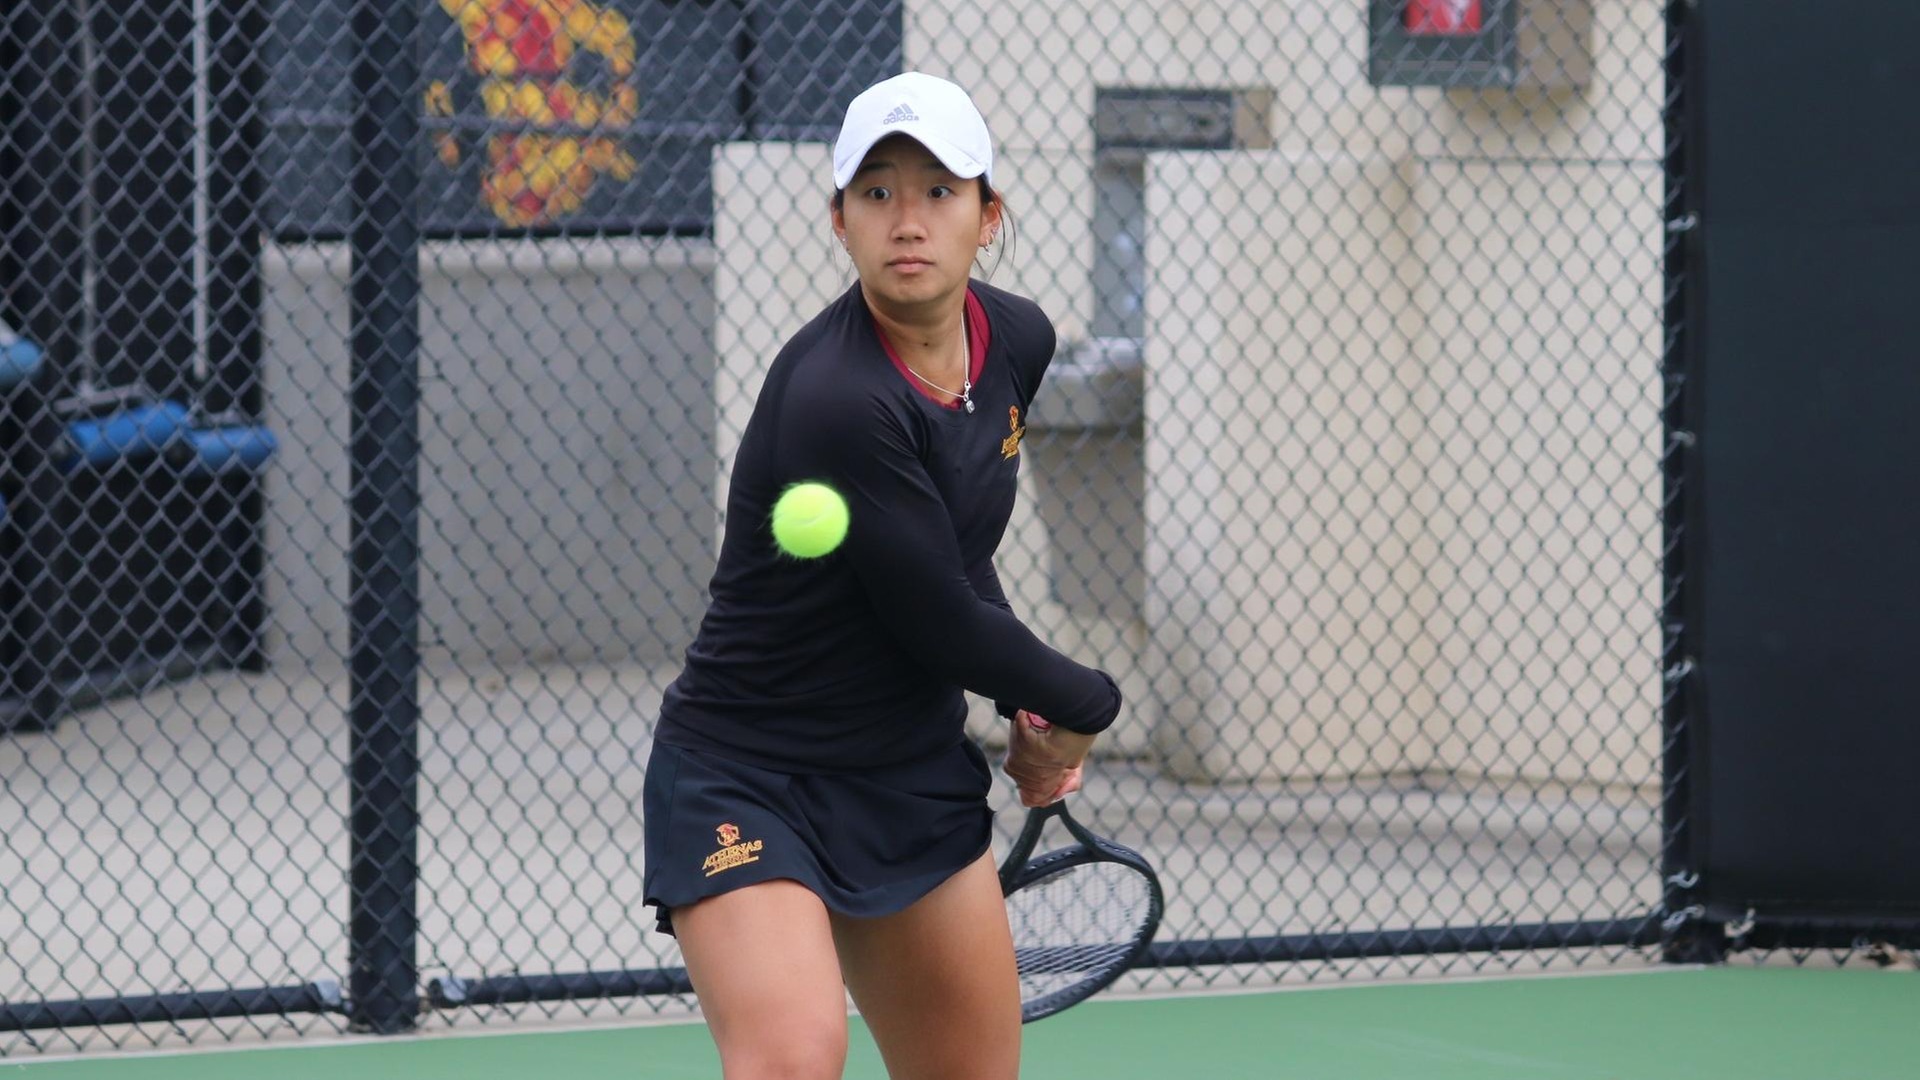 Audrey Yoon won 6-0, 6-0 at No. 2 singles